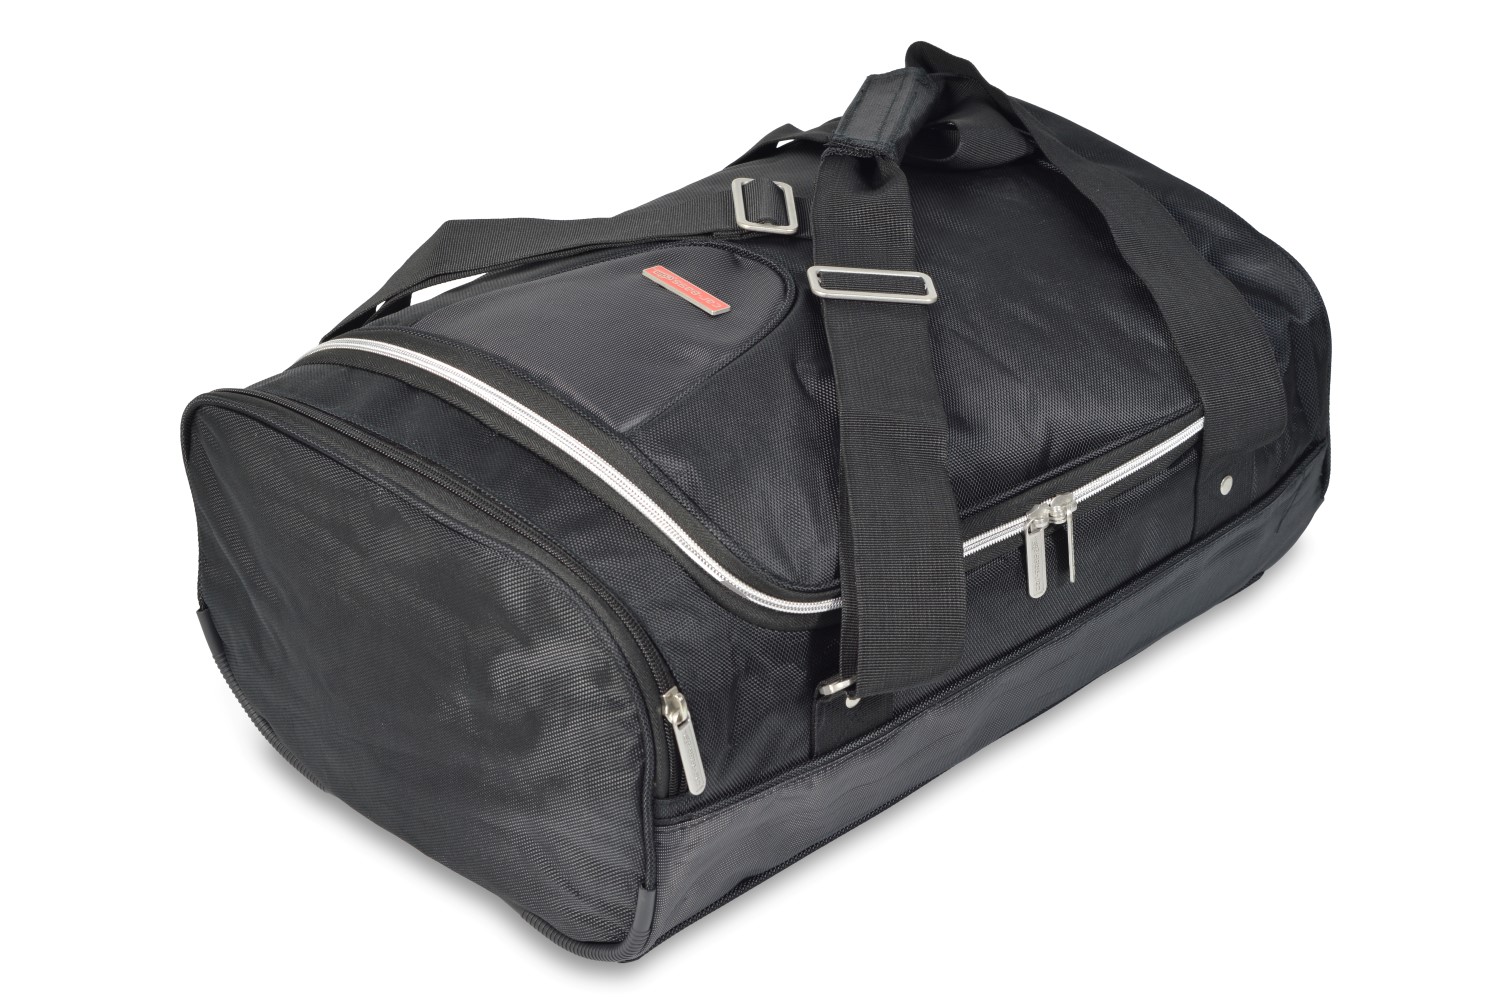 Travel bag - 31x21x60cm (WxHxL)